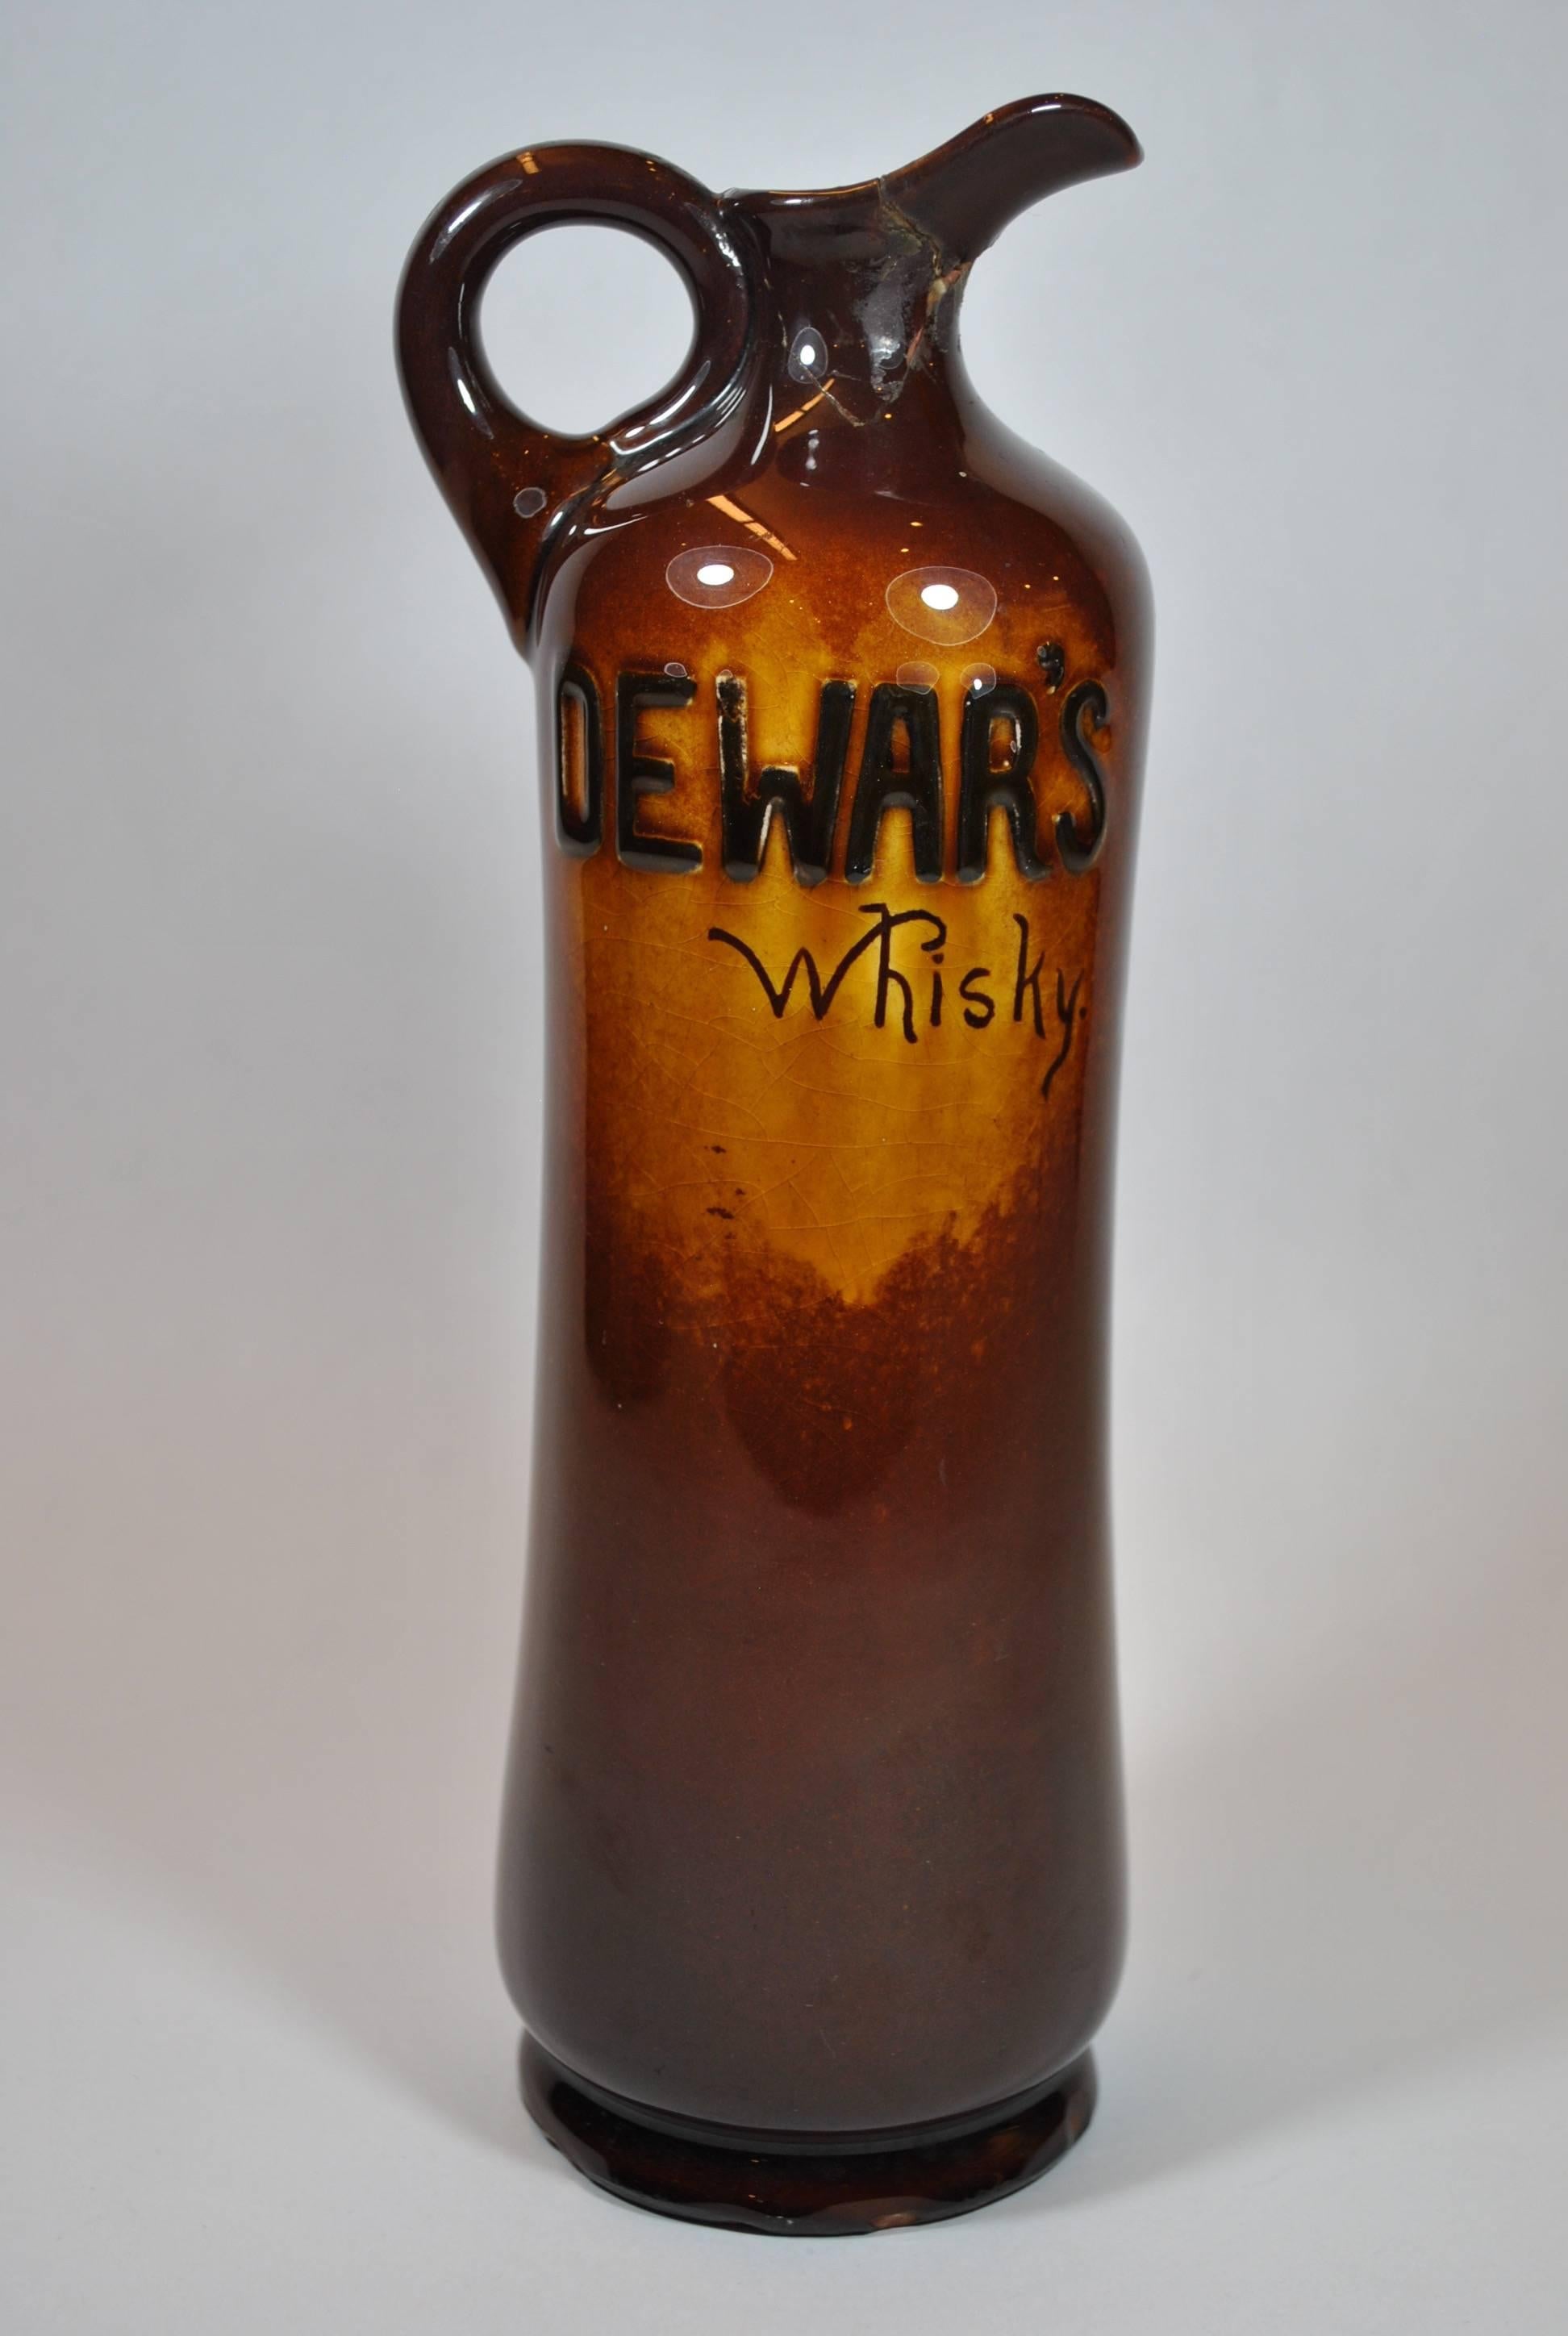 British Vintage Royal Doulton Kingsware Night Watchman Dewar's Whisky Bottles